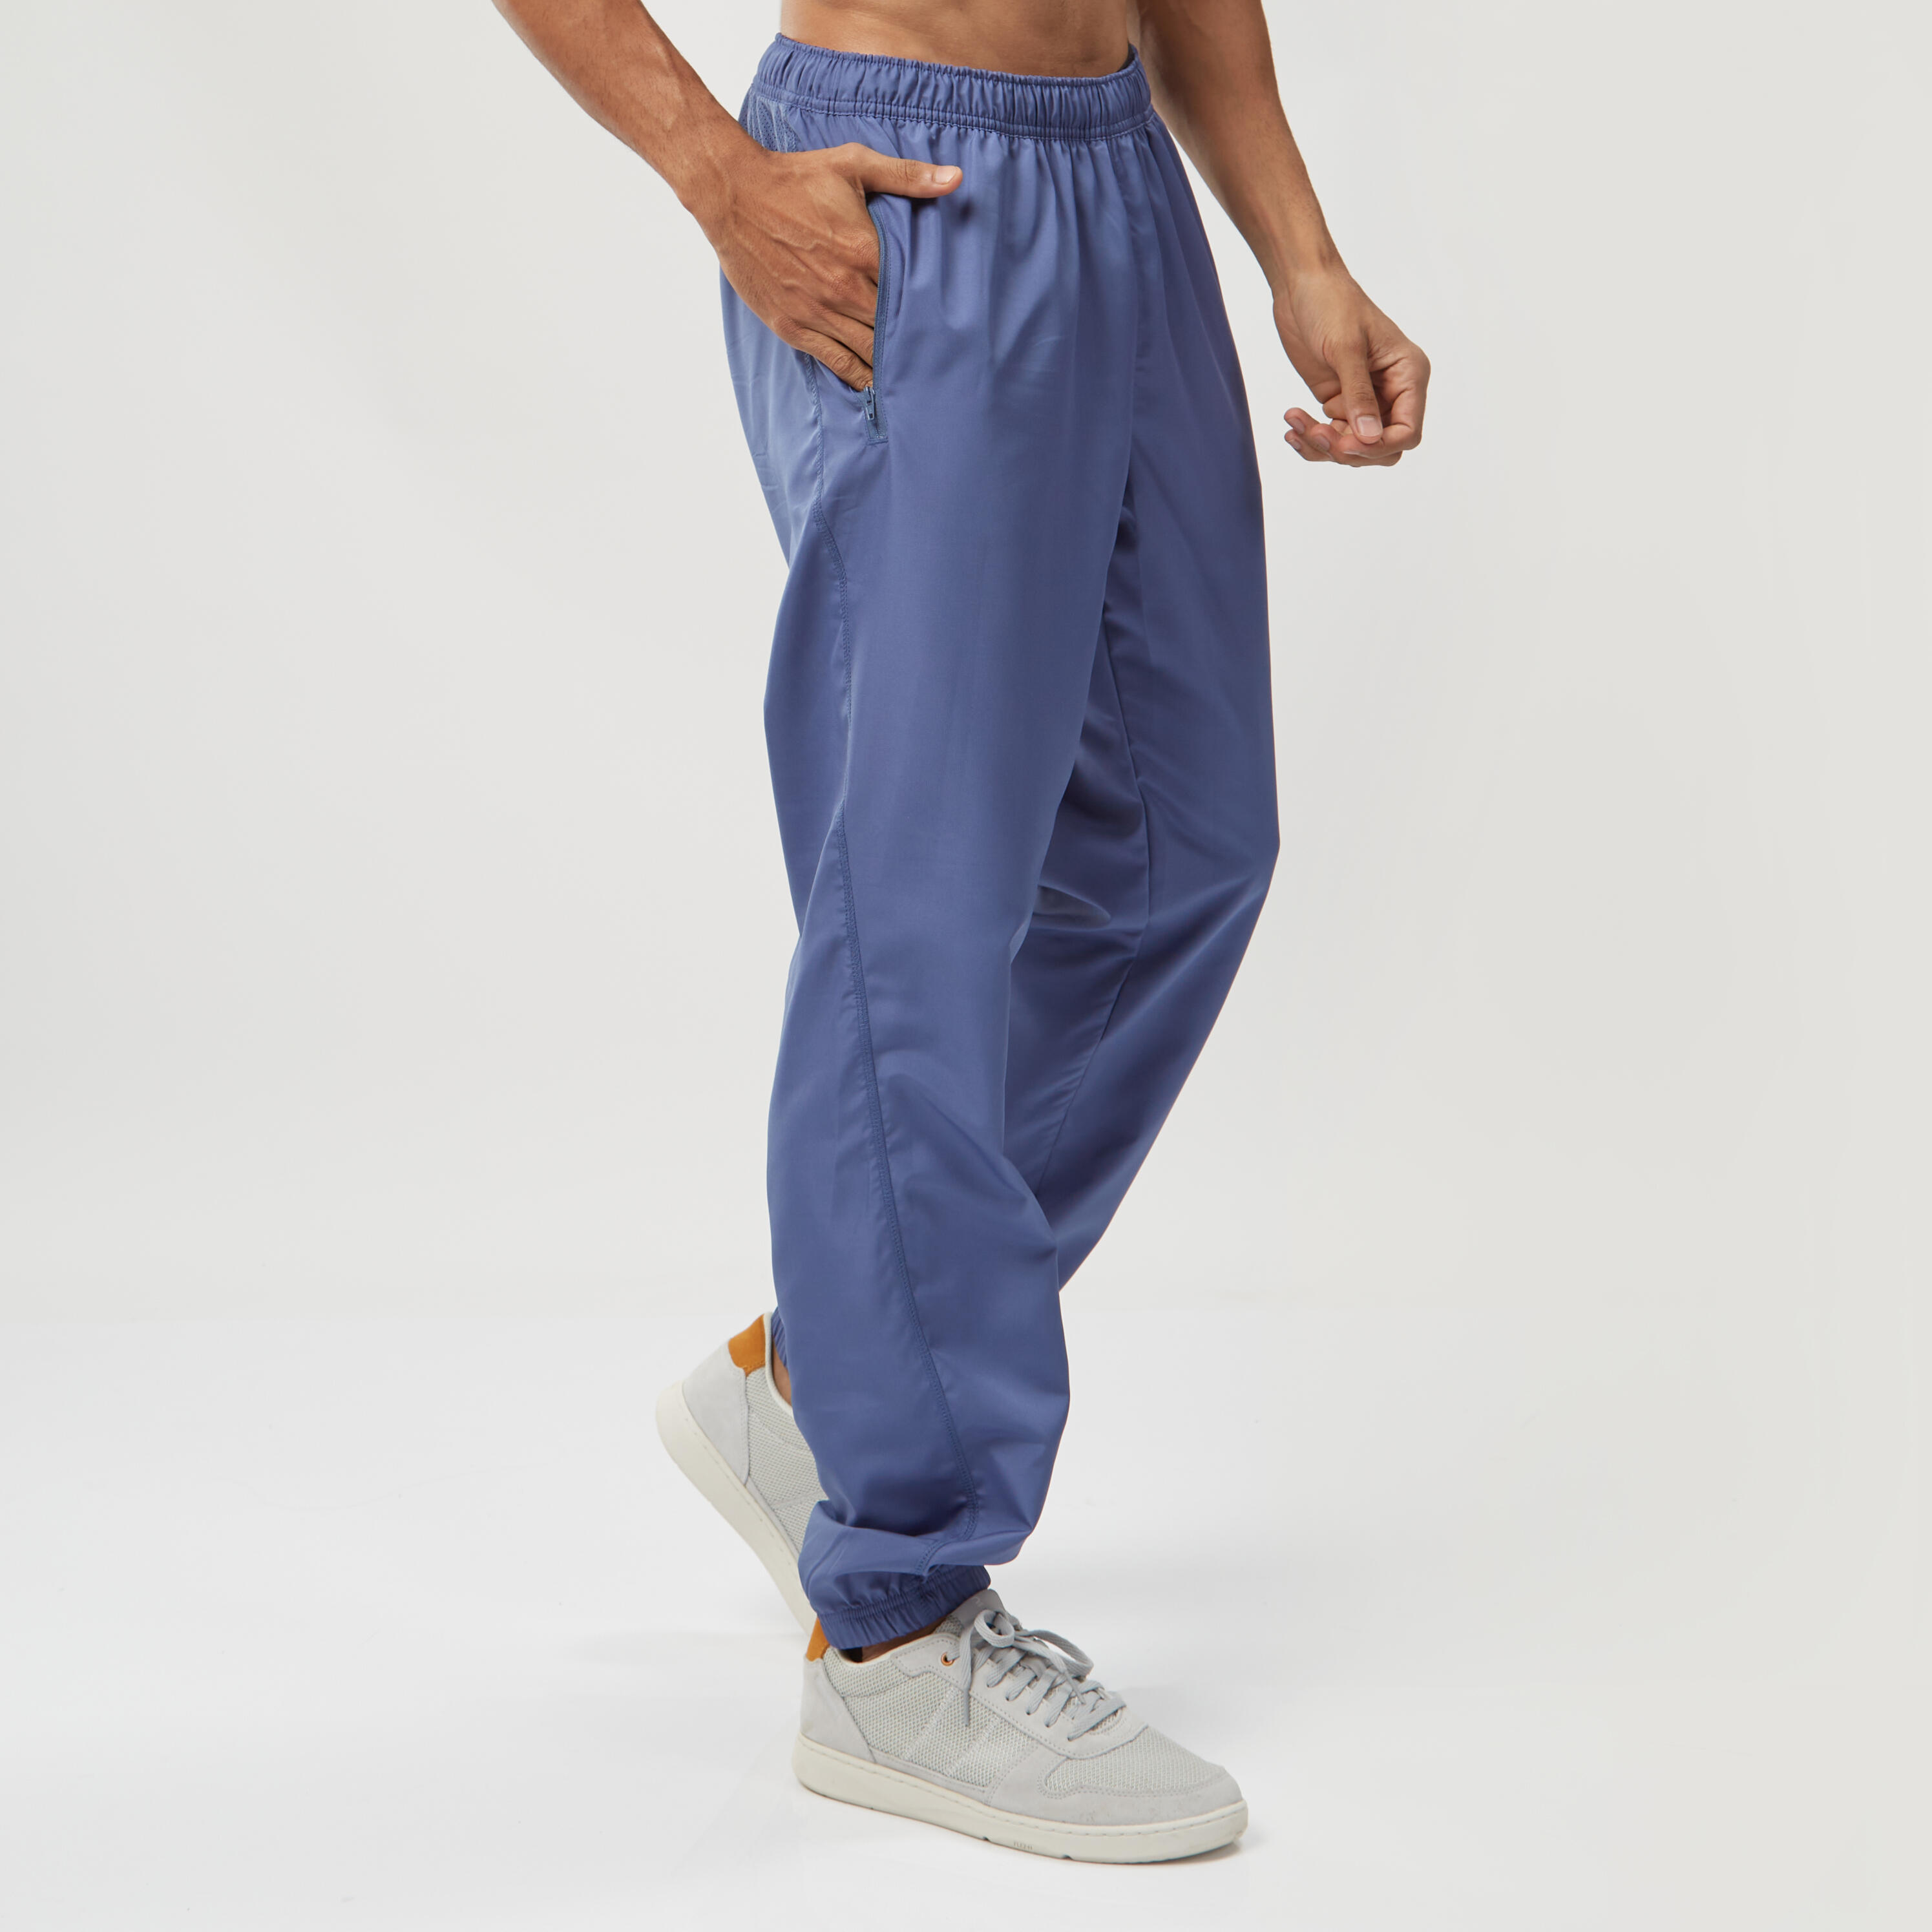 Lacoste Tracksuit Trousers Blue - Mens - Sweatpants/Track Pants Lacoste